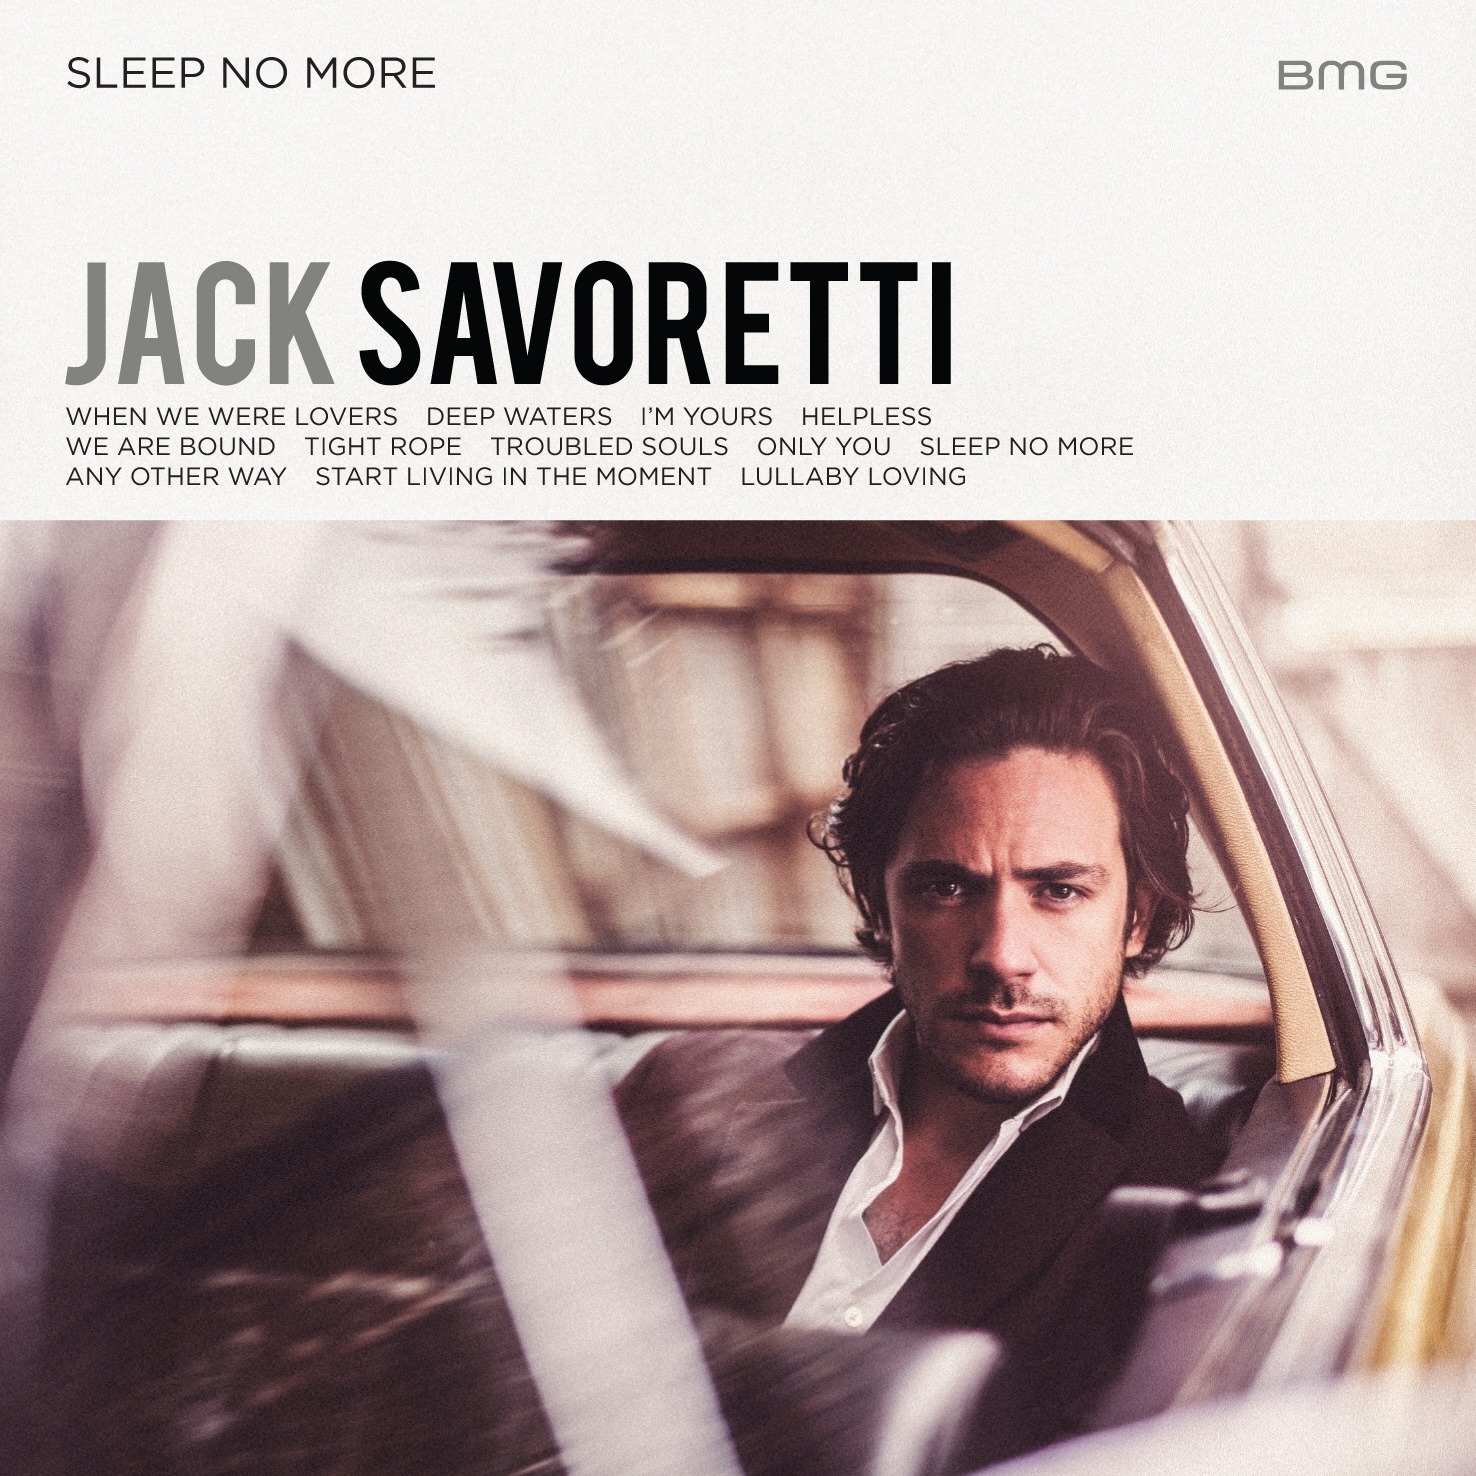 Jack Savoretti announces new album and UK tour